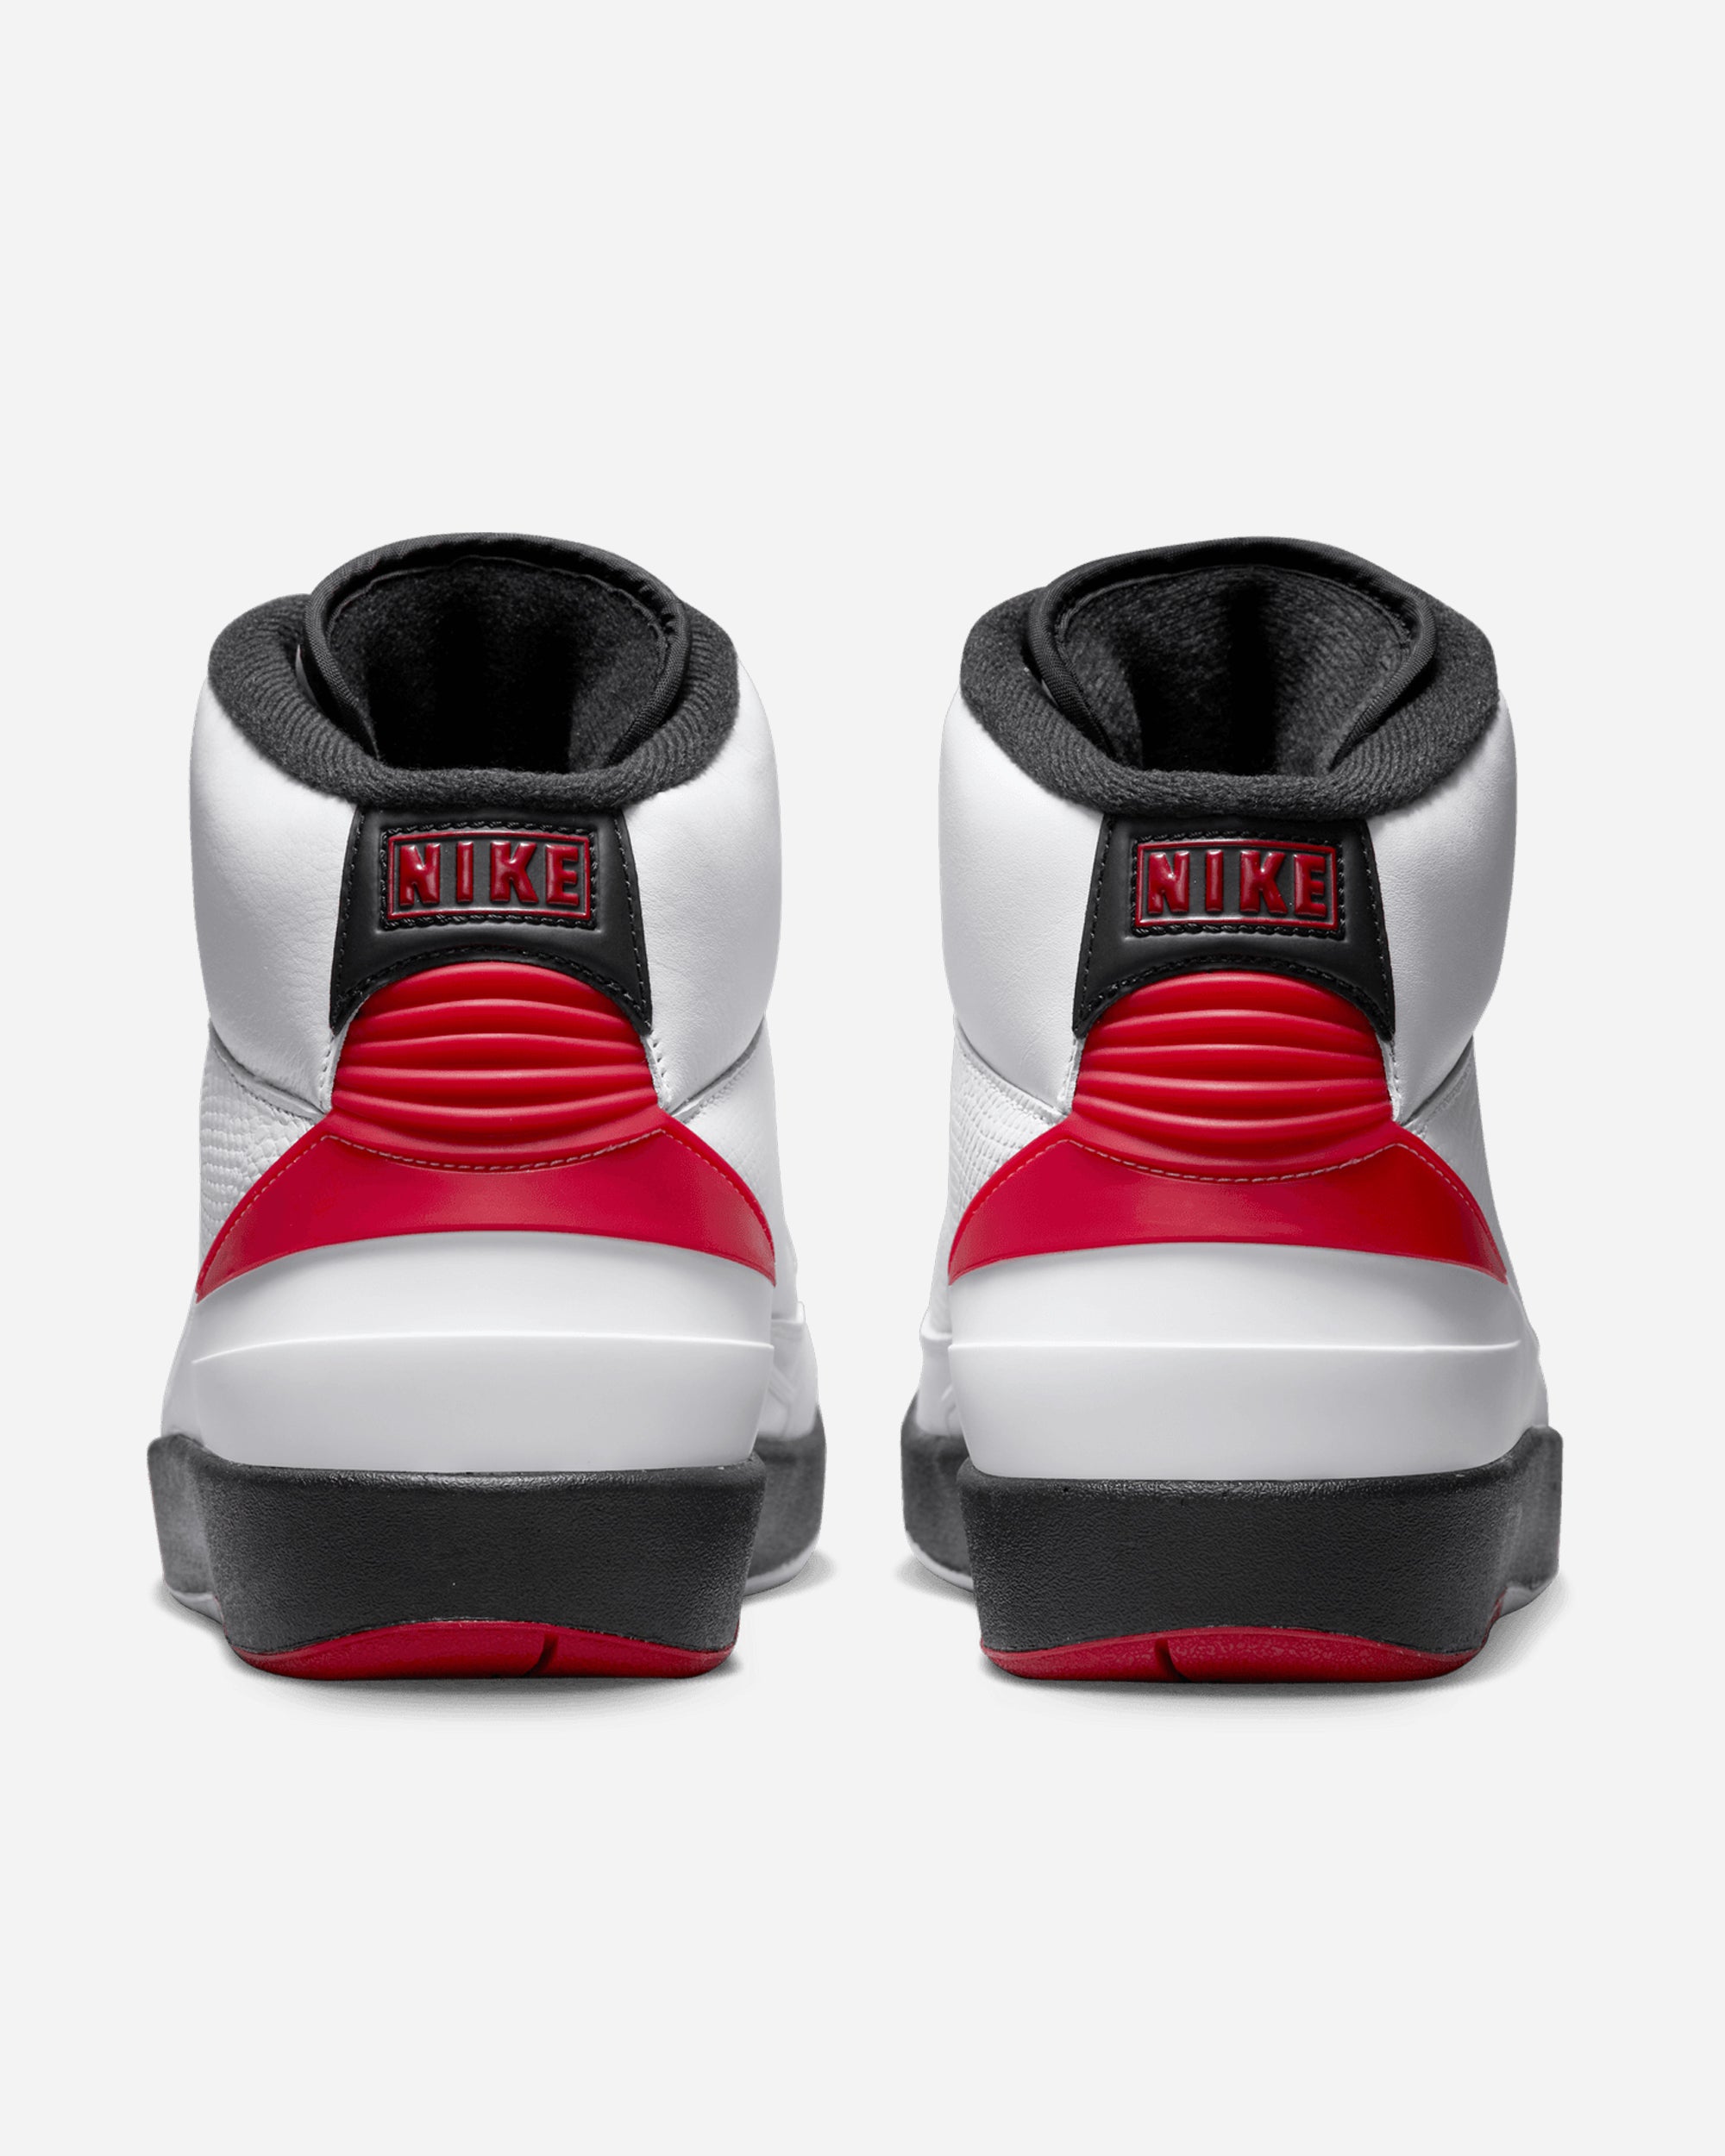 Jordan Brand Air Jordan 2 Retro 'Chicago' WHITE/VARSITY RED-BLACK DX2454-106